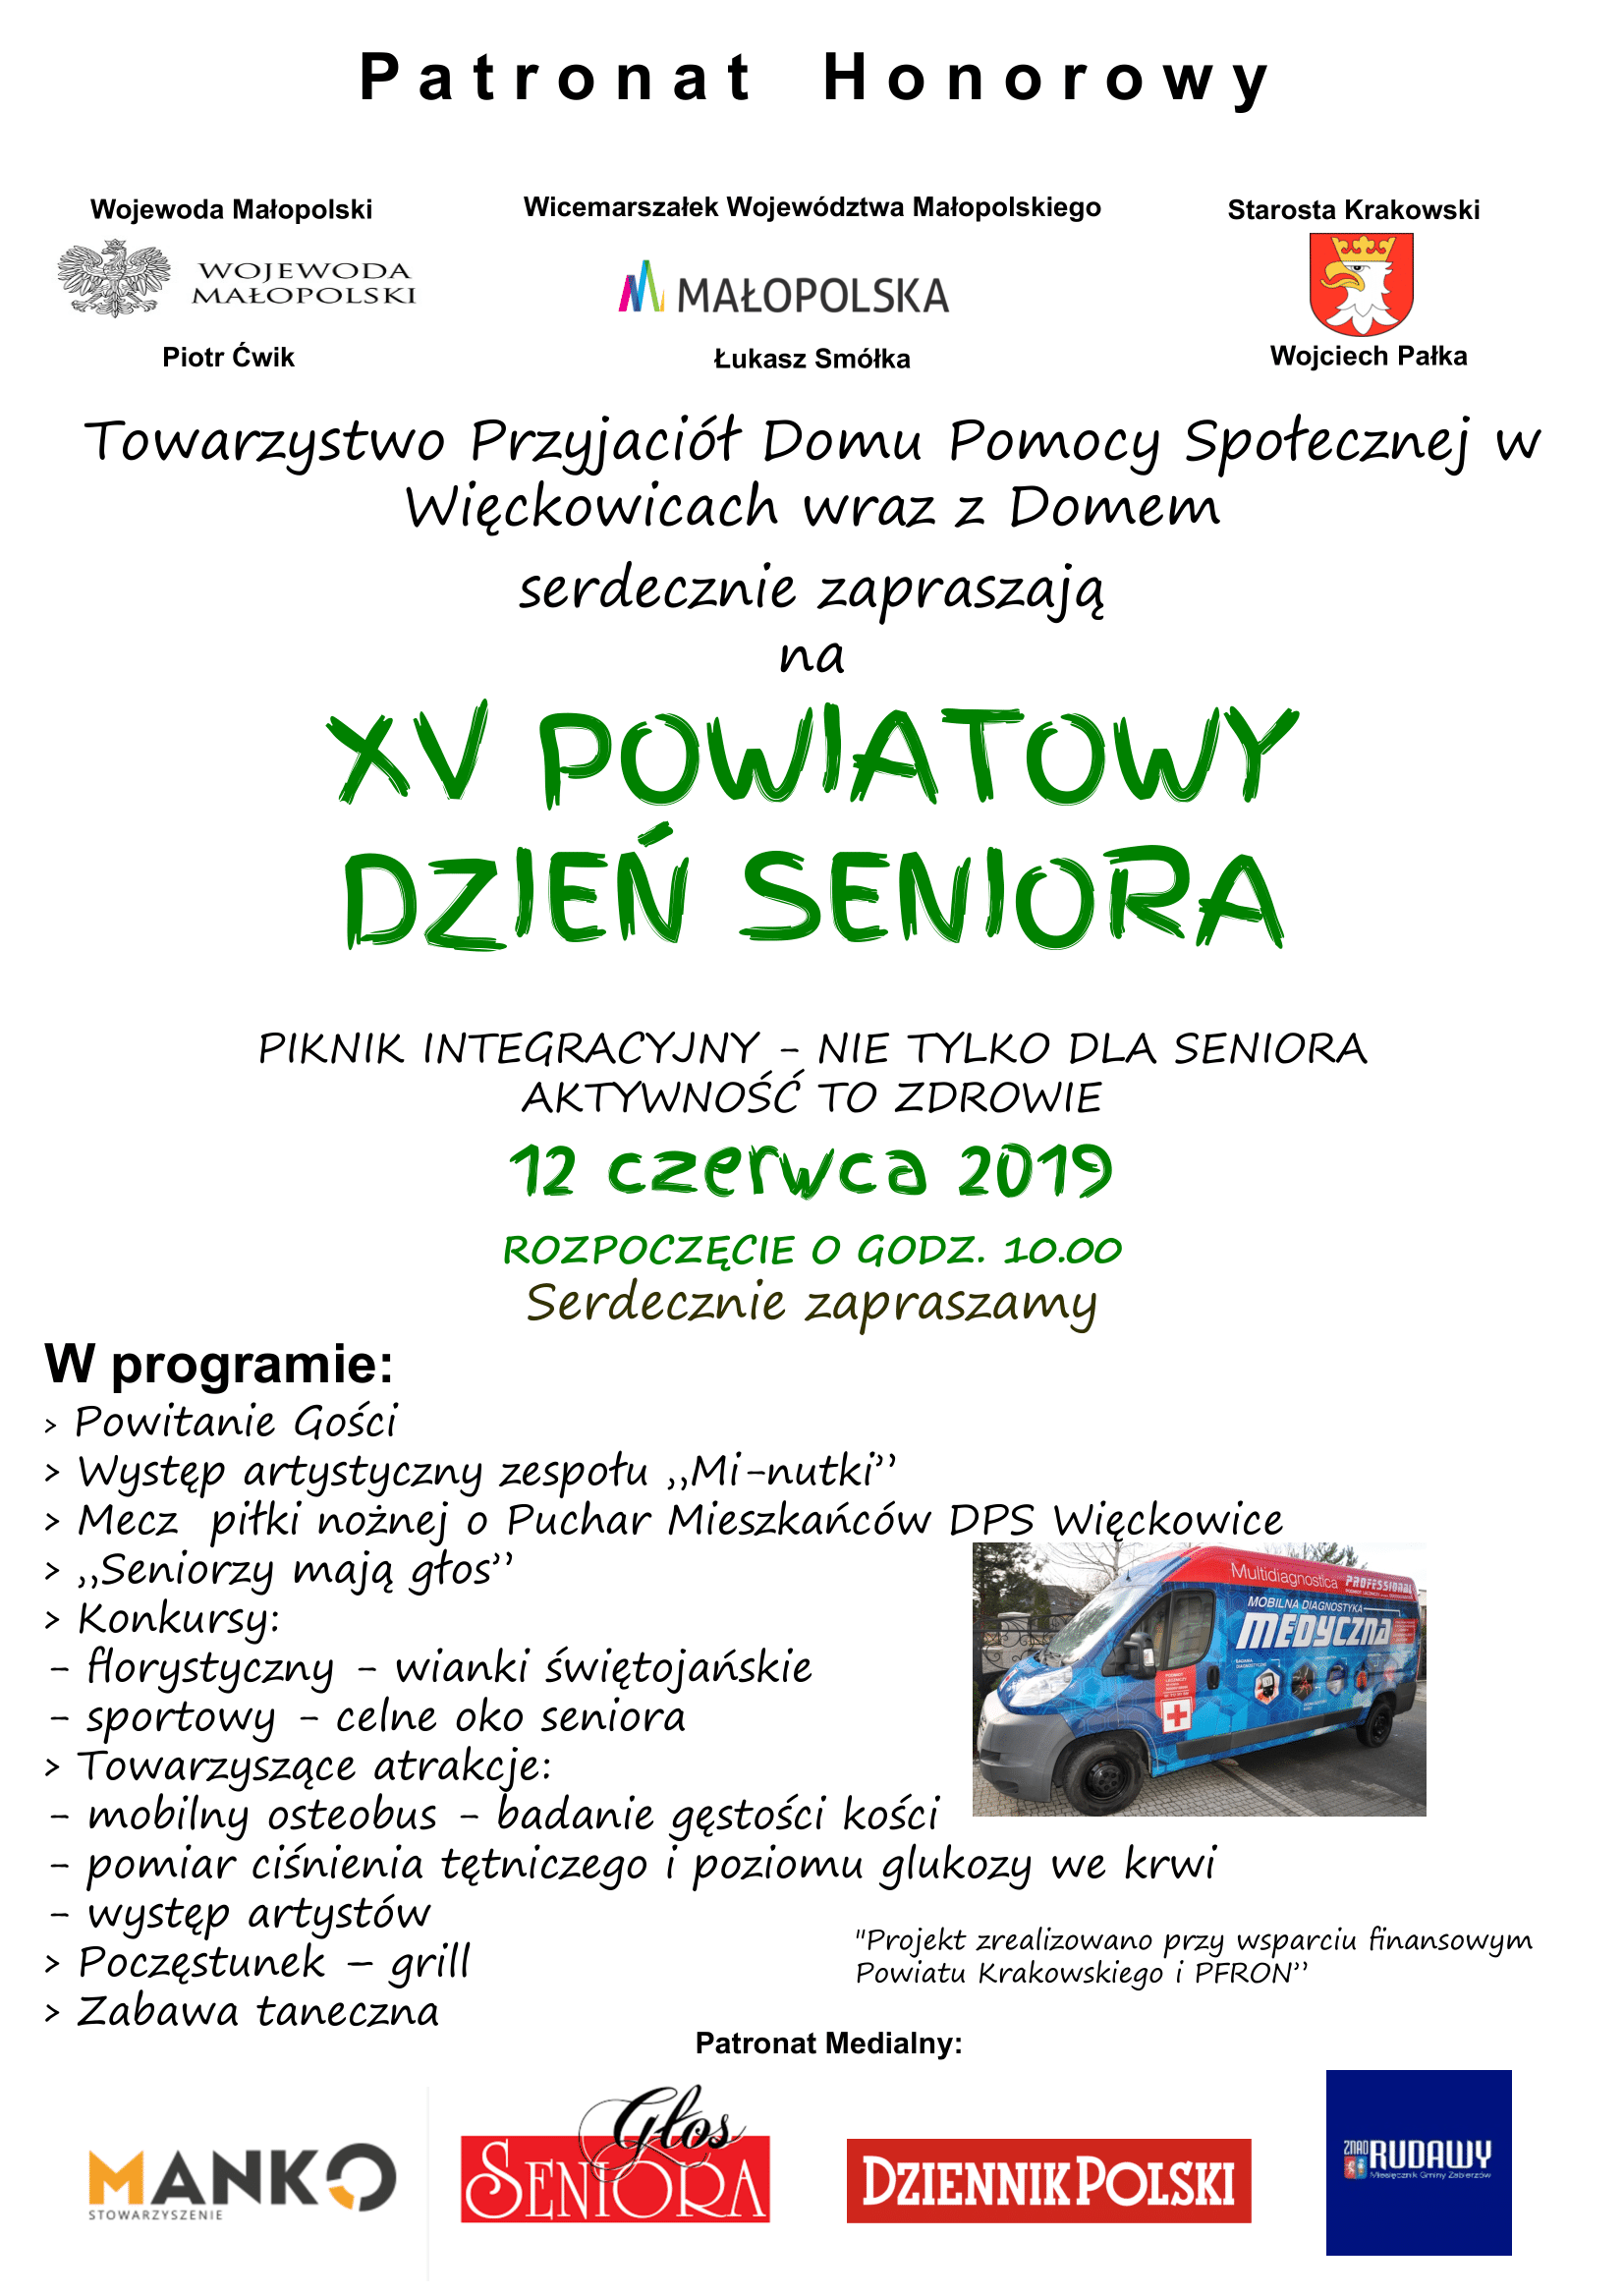 Piętnasty Powiatowy Dzień Seniora w Więckowicach dwunasty czerwca